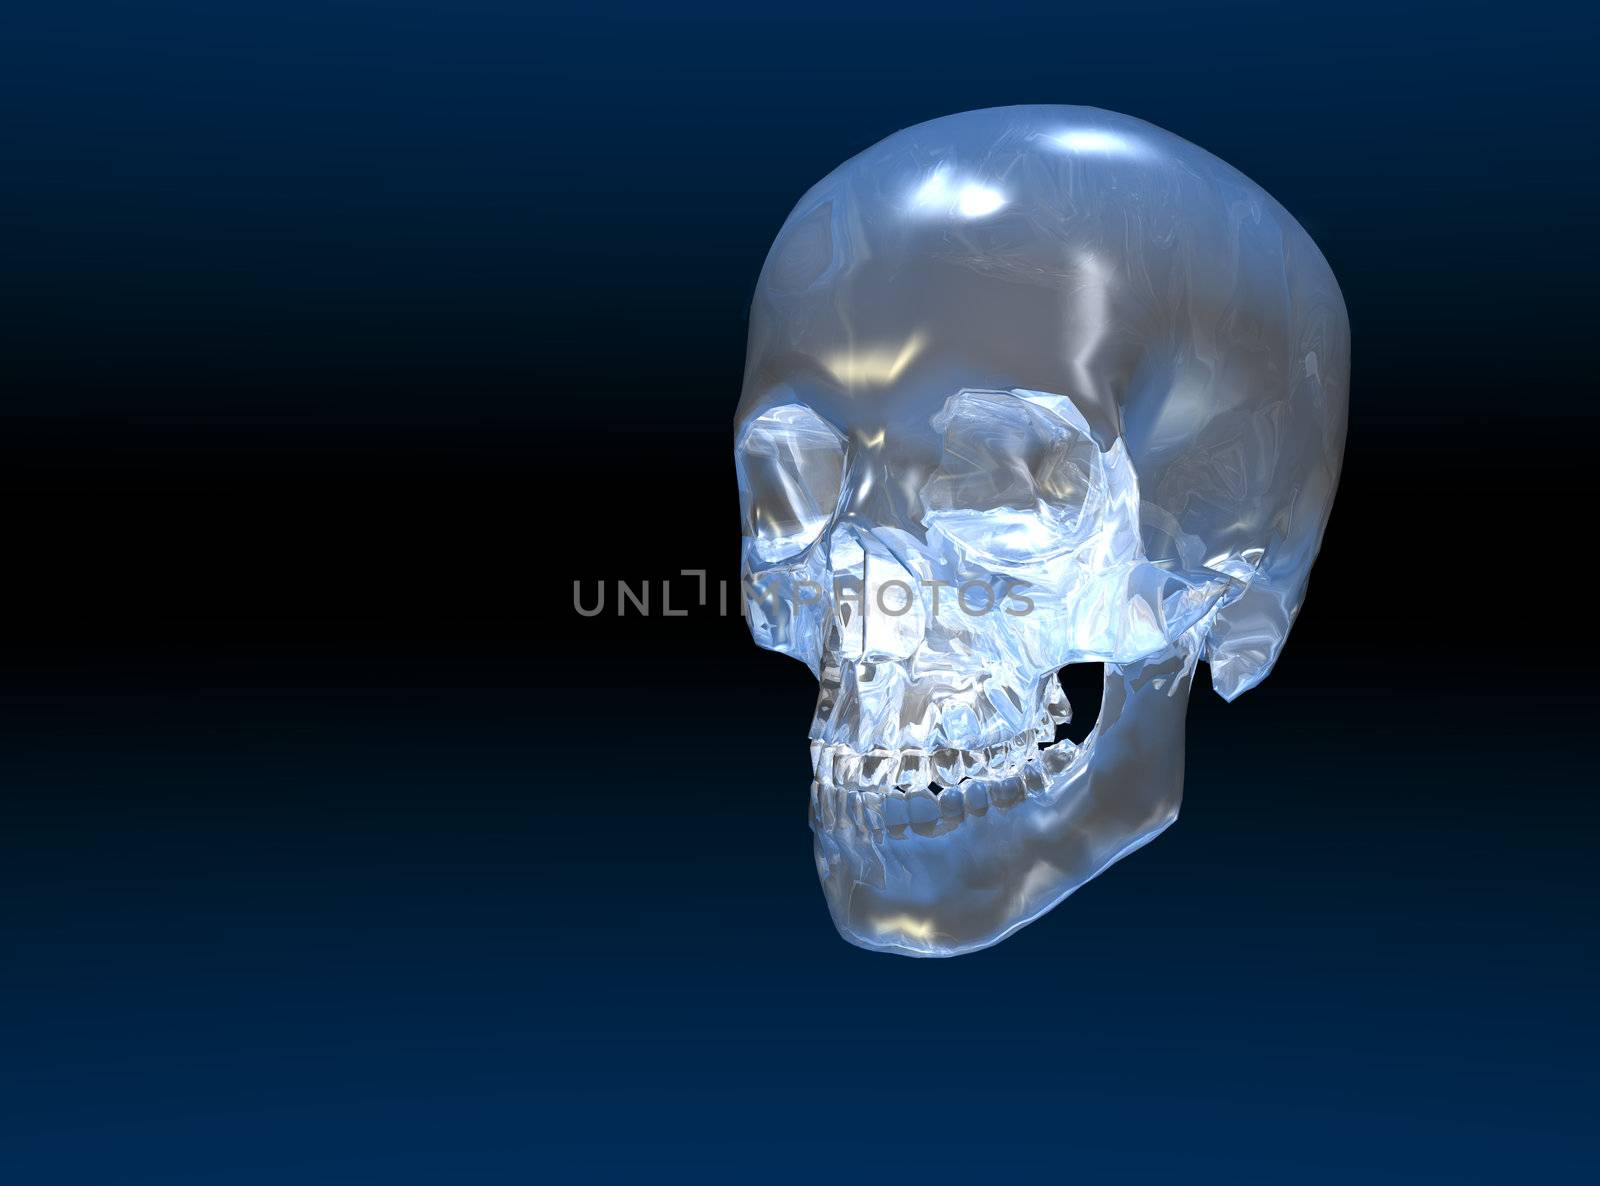 Crystal skull by Clivia